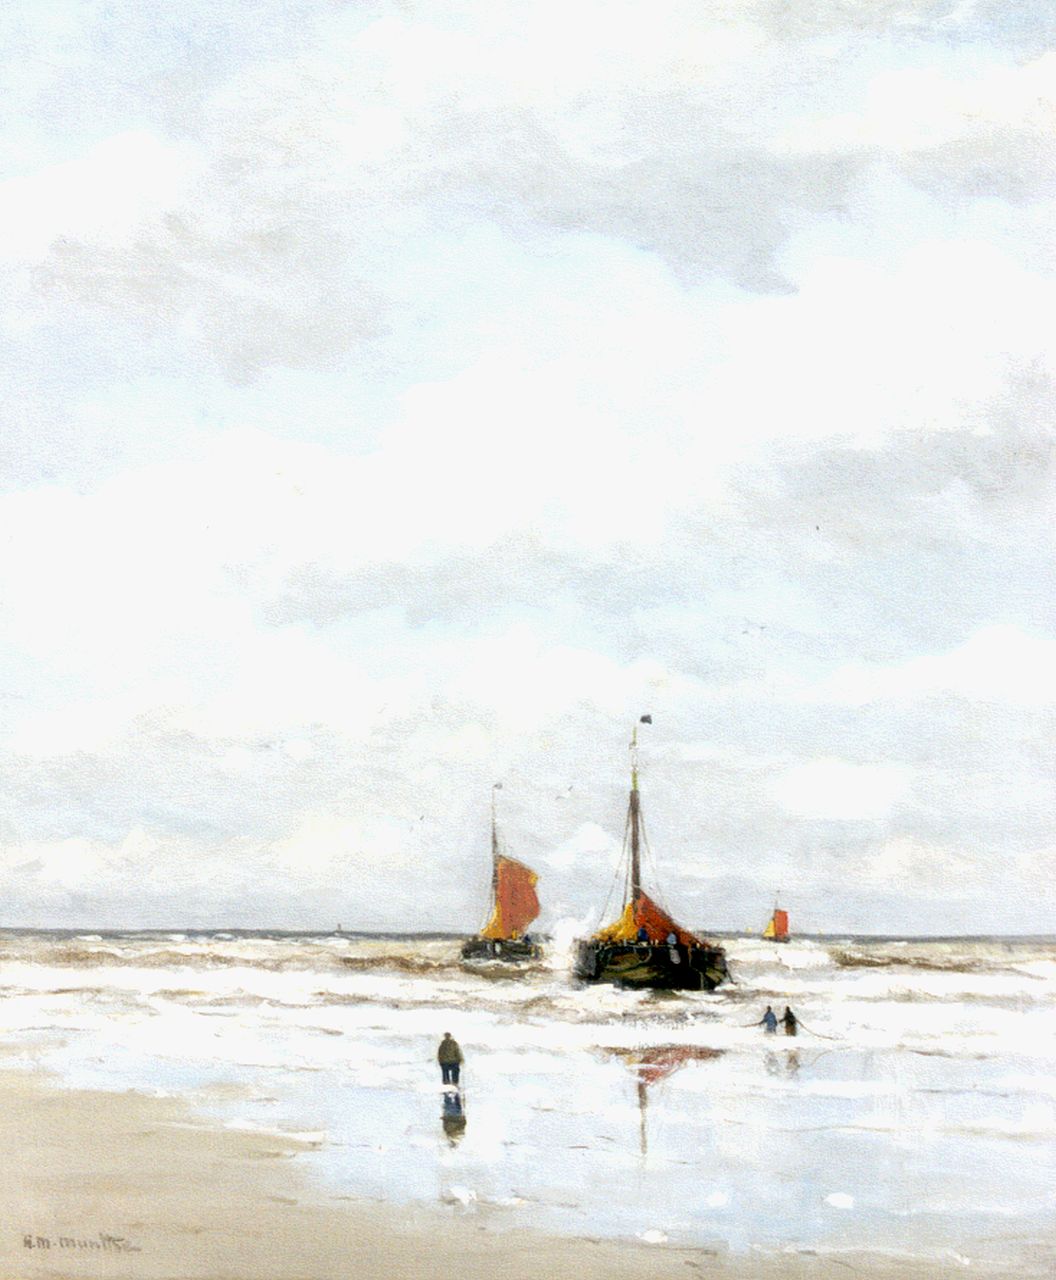 Munthe G.A.L.  | Gerhard Arij Ludwig 'Morgenstjerne' Munthe, 'Bomschuiten' in the surf, Öl auf Leinwand 76,2 x 63,5 cm, signed l.l.